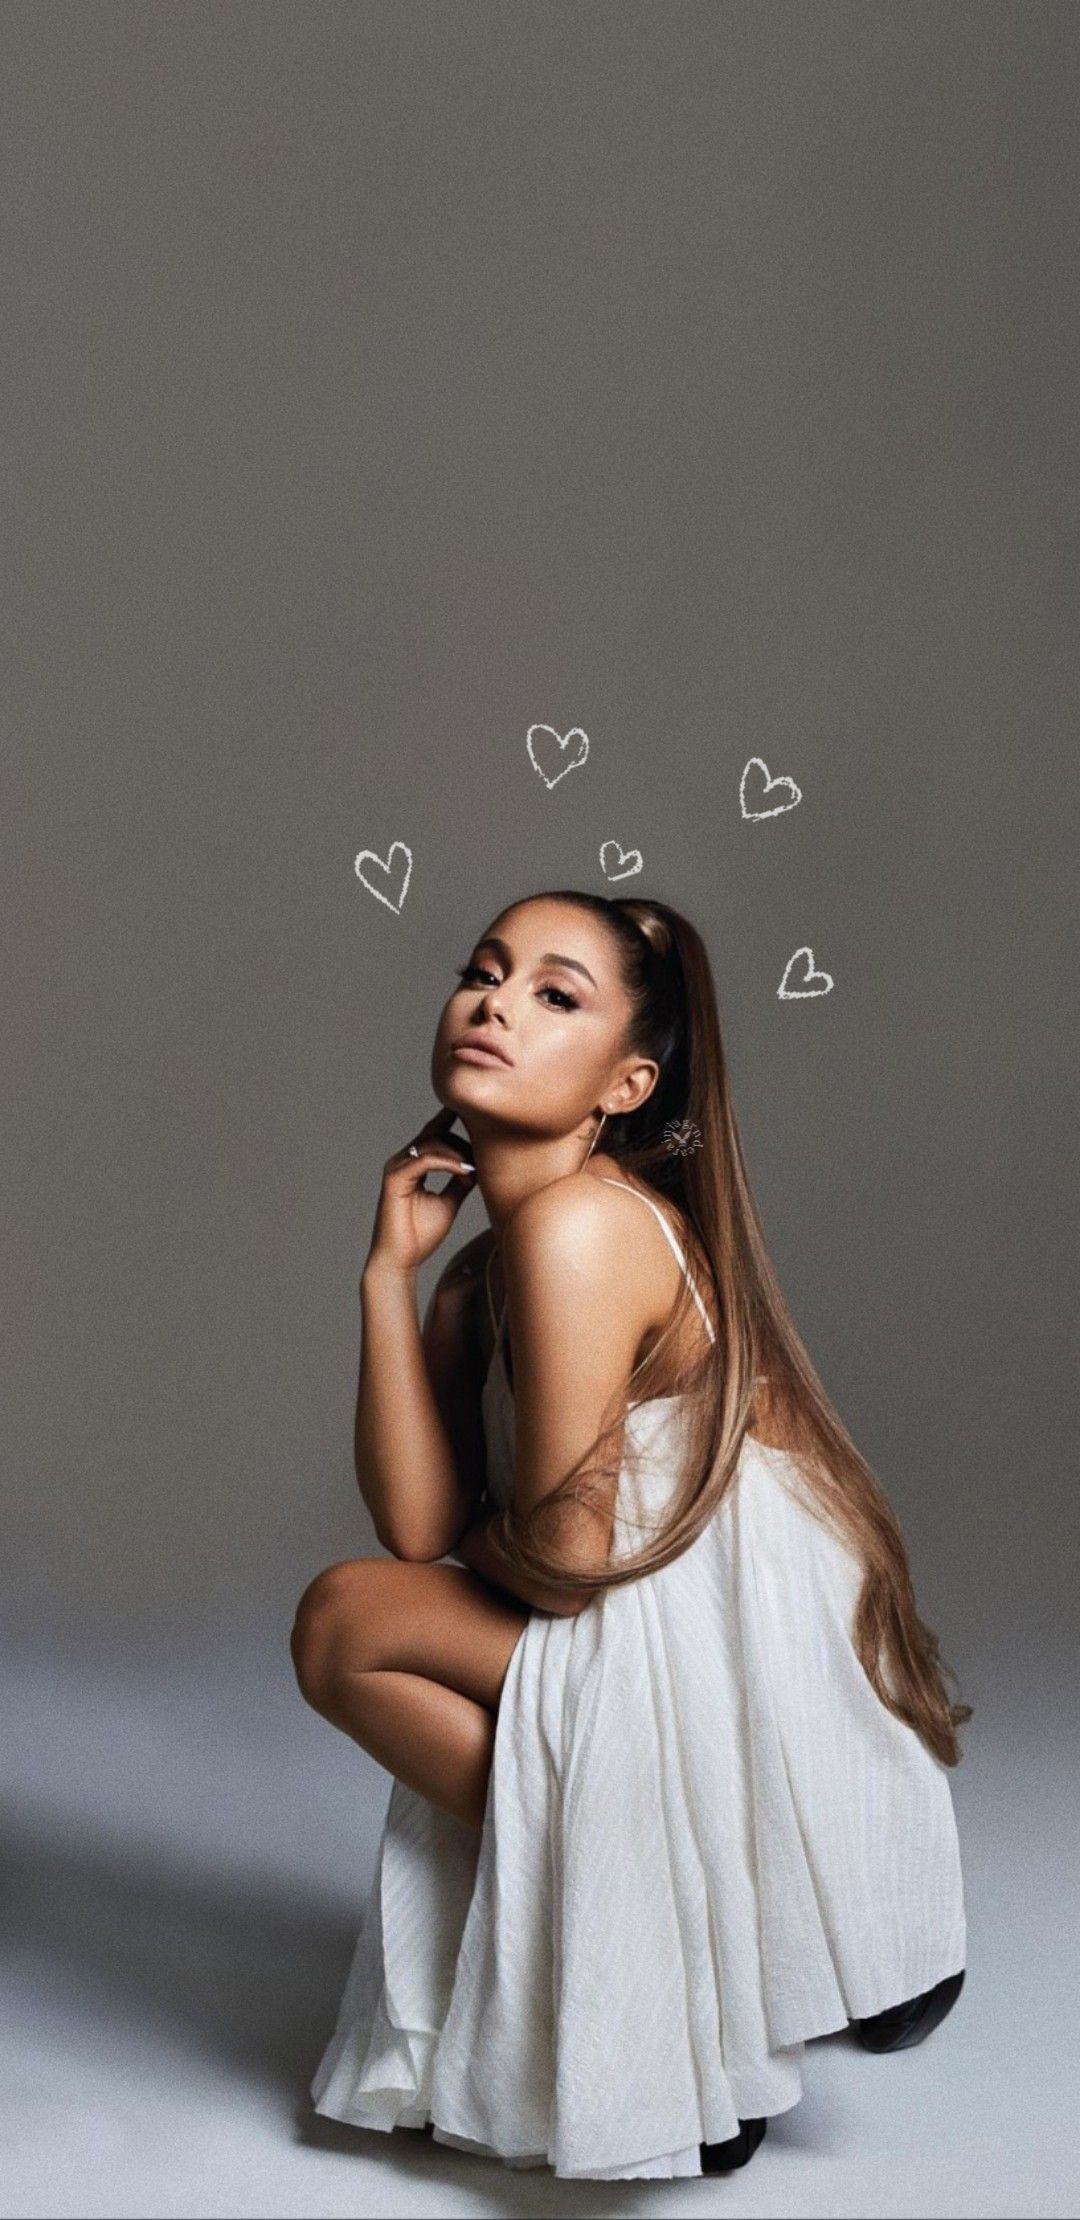 🔥 16 Ariana Grande 2019 Wallpapers Wallpapersafari